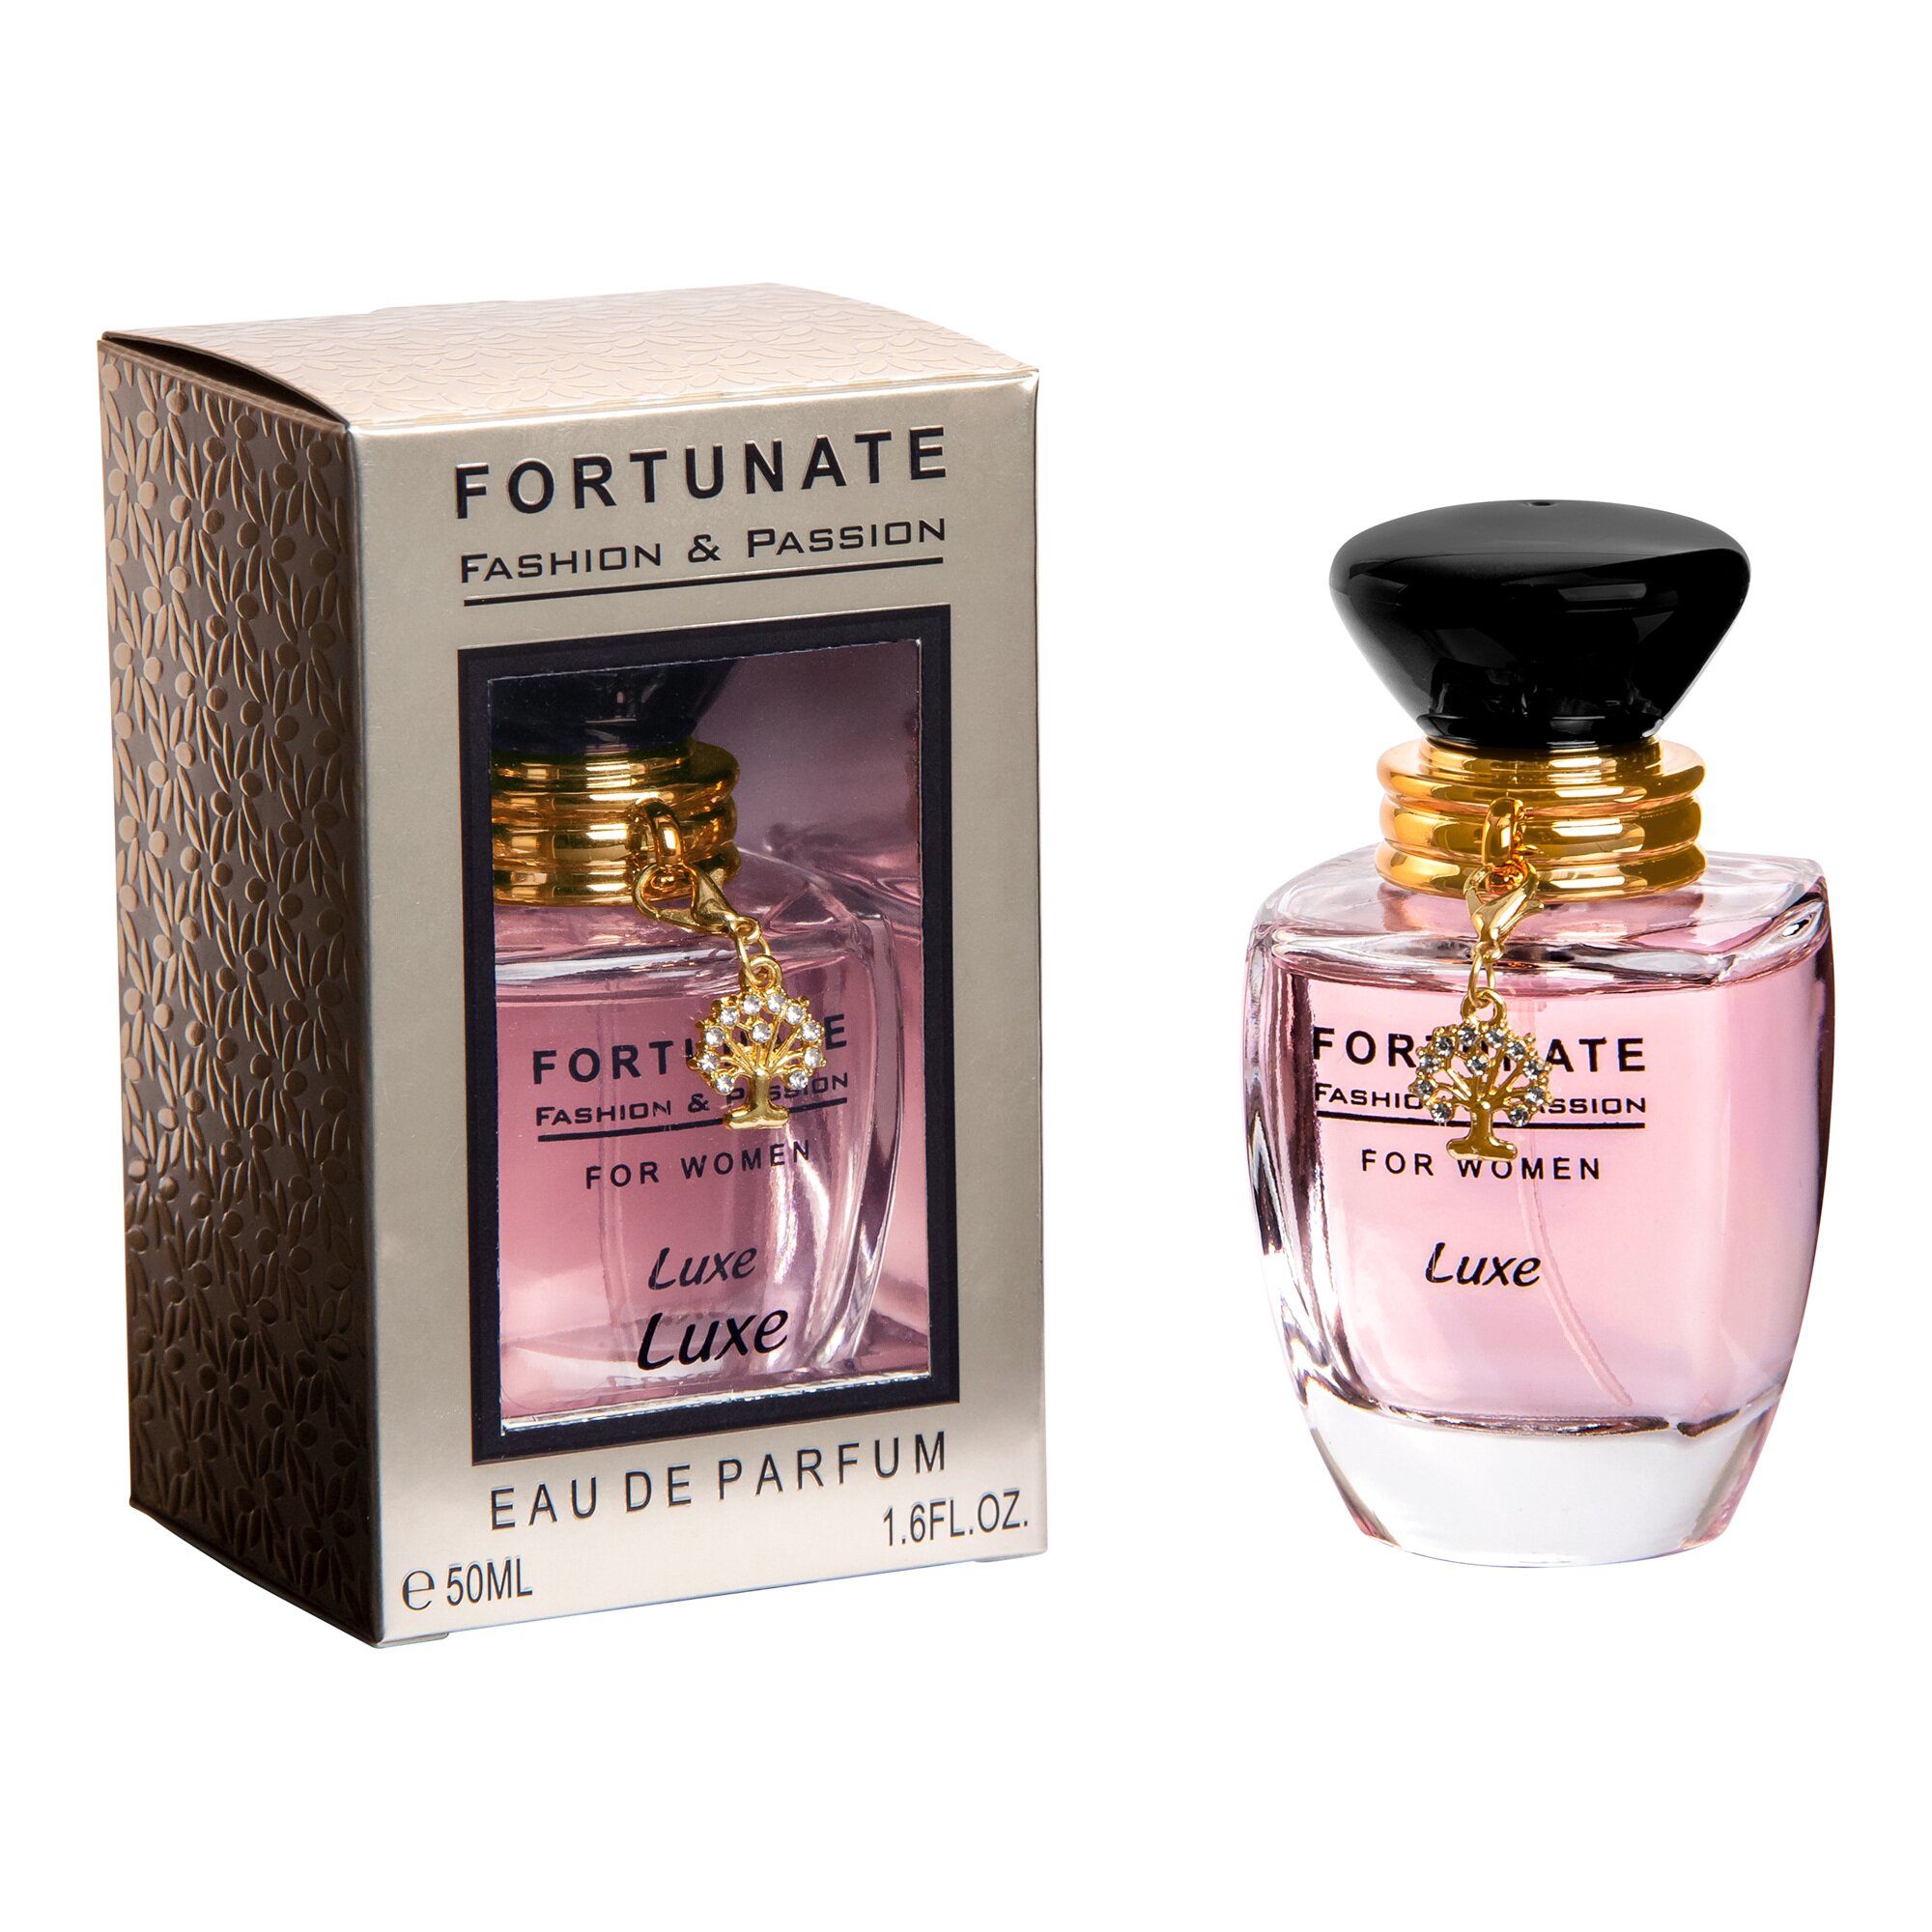 Image of Eau de Parfum Luxe, "Fortunate Fashion & Passion", 50 ml